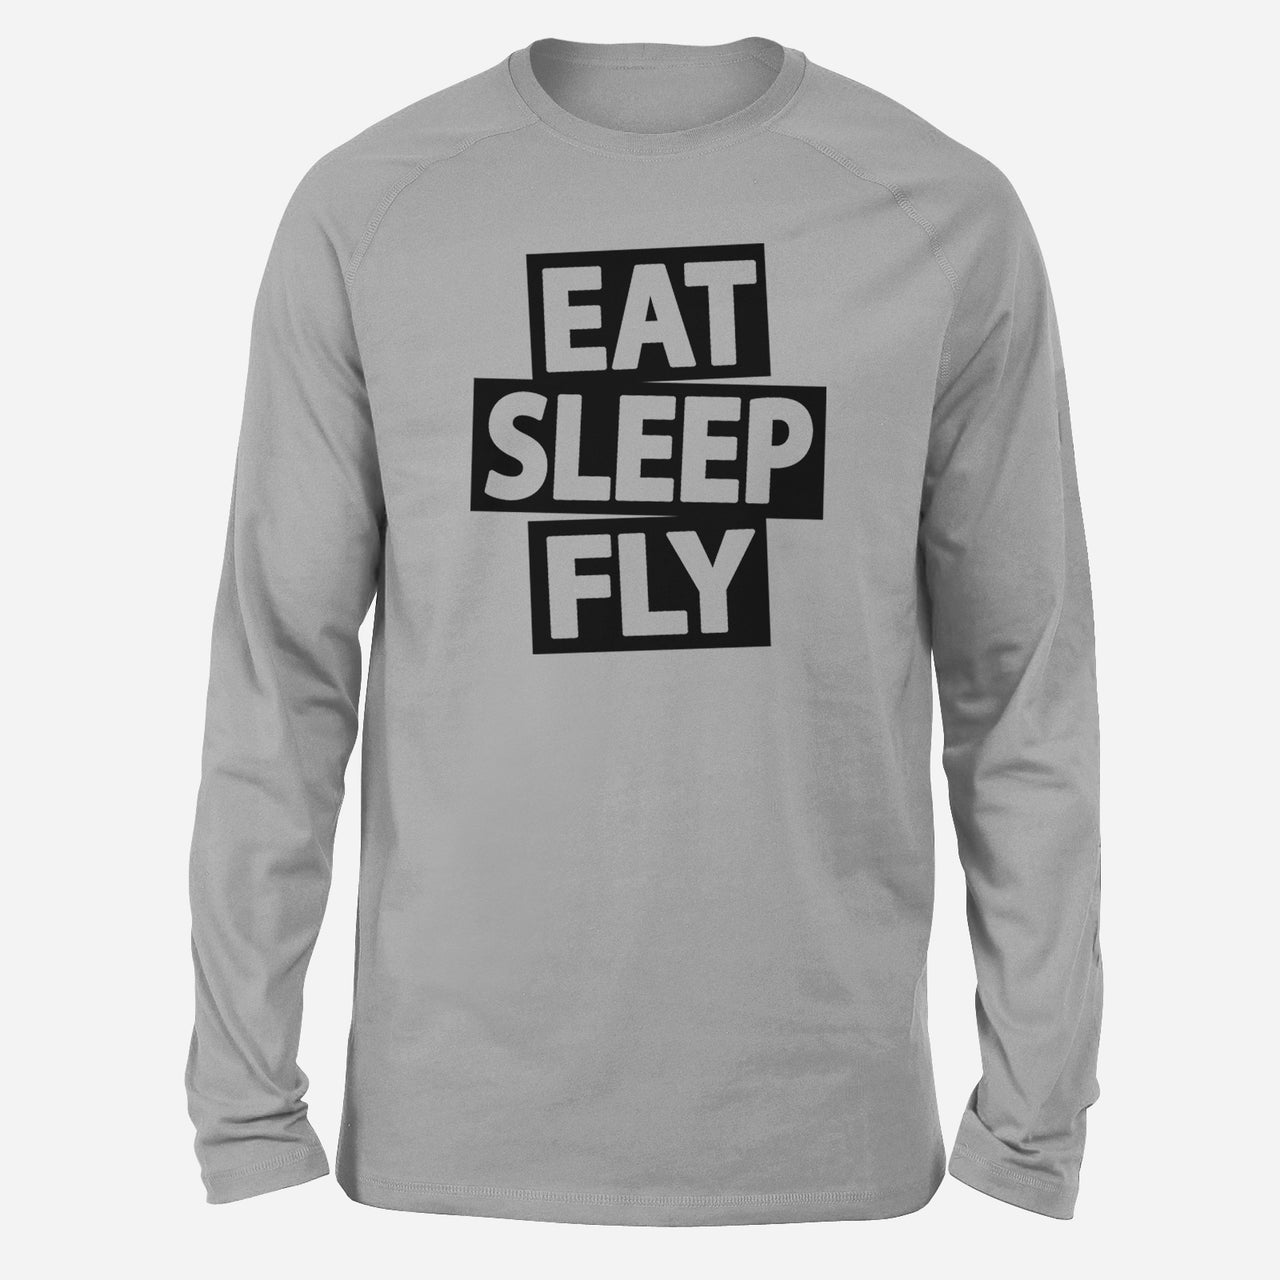 Eat Sleep Fly Designed Long-Sleeve T-Shirts